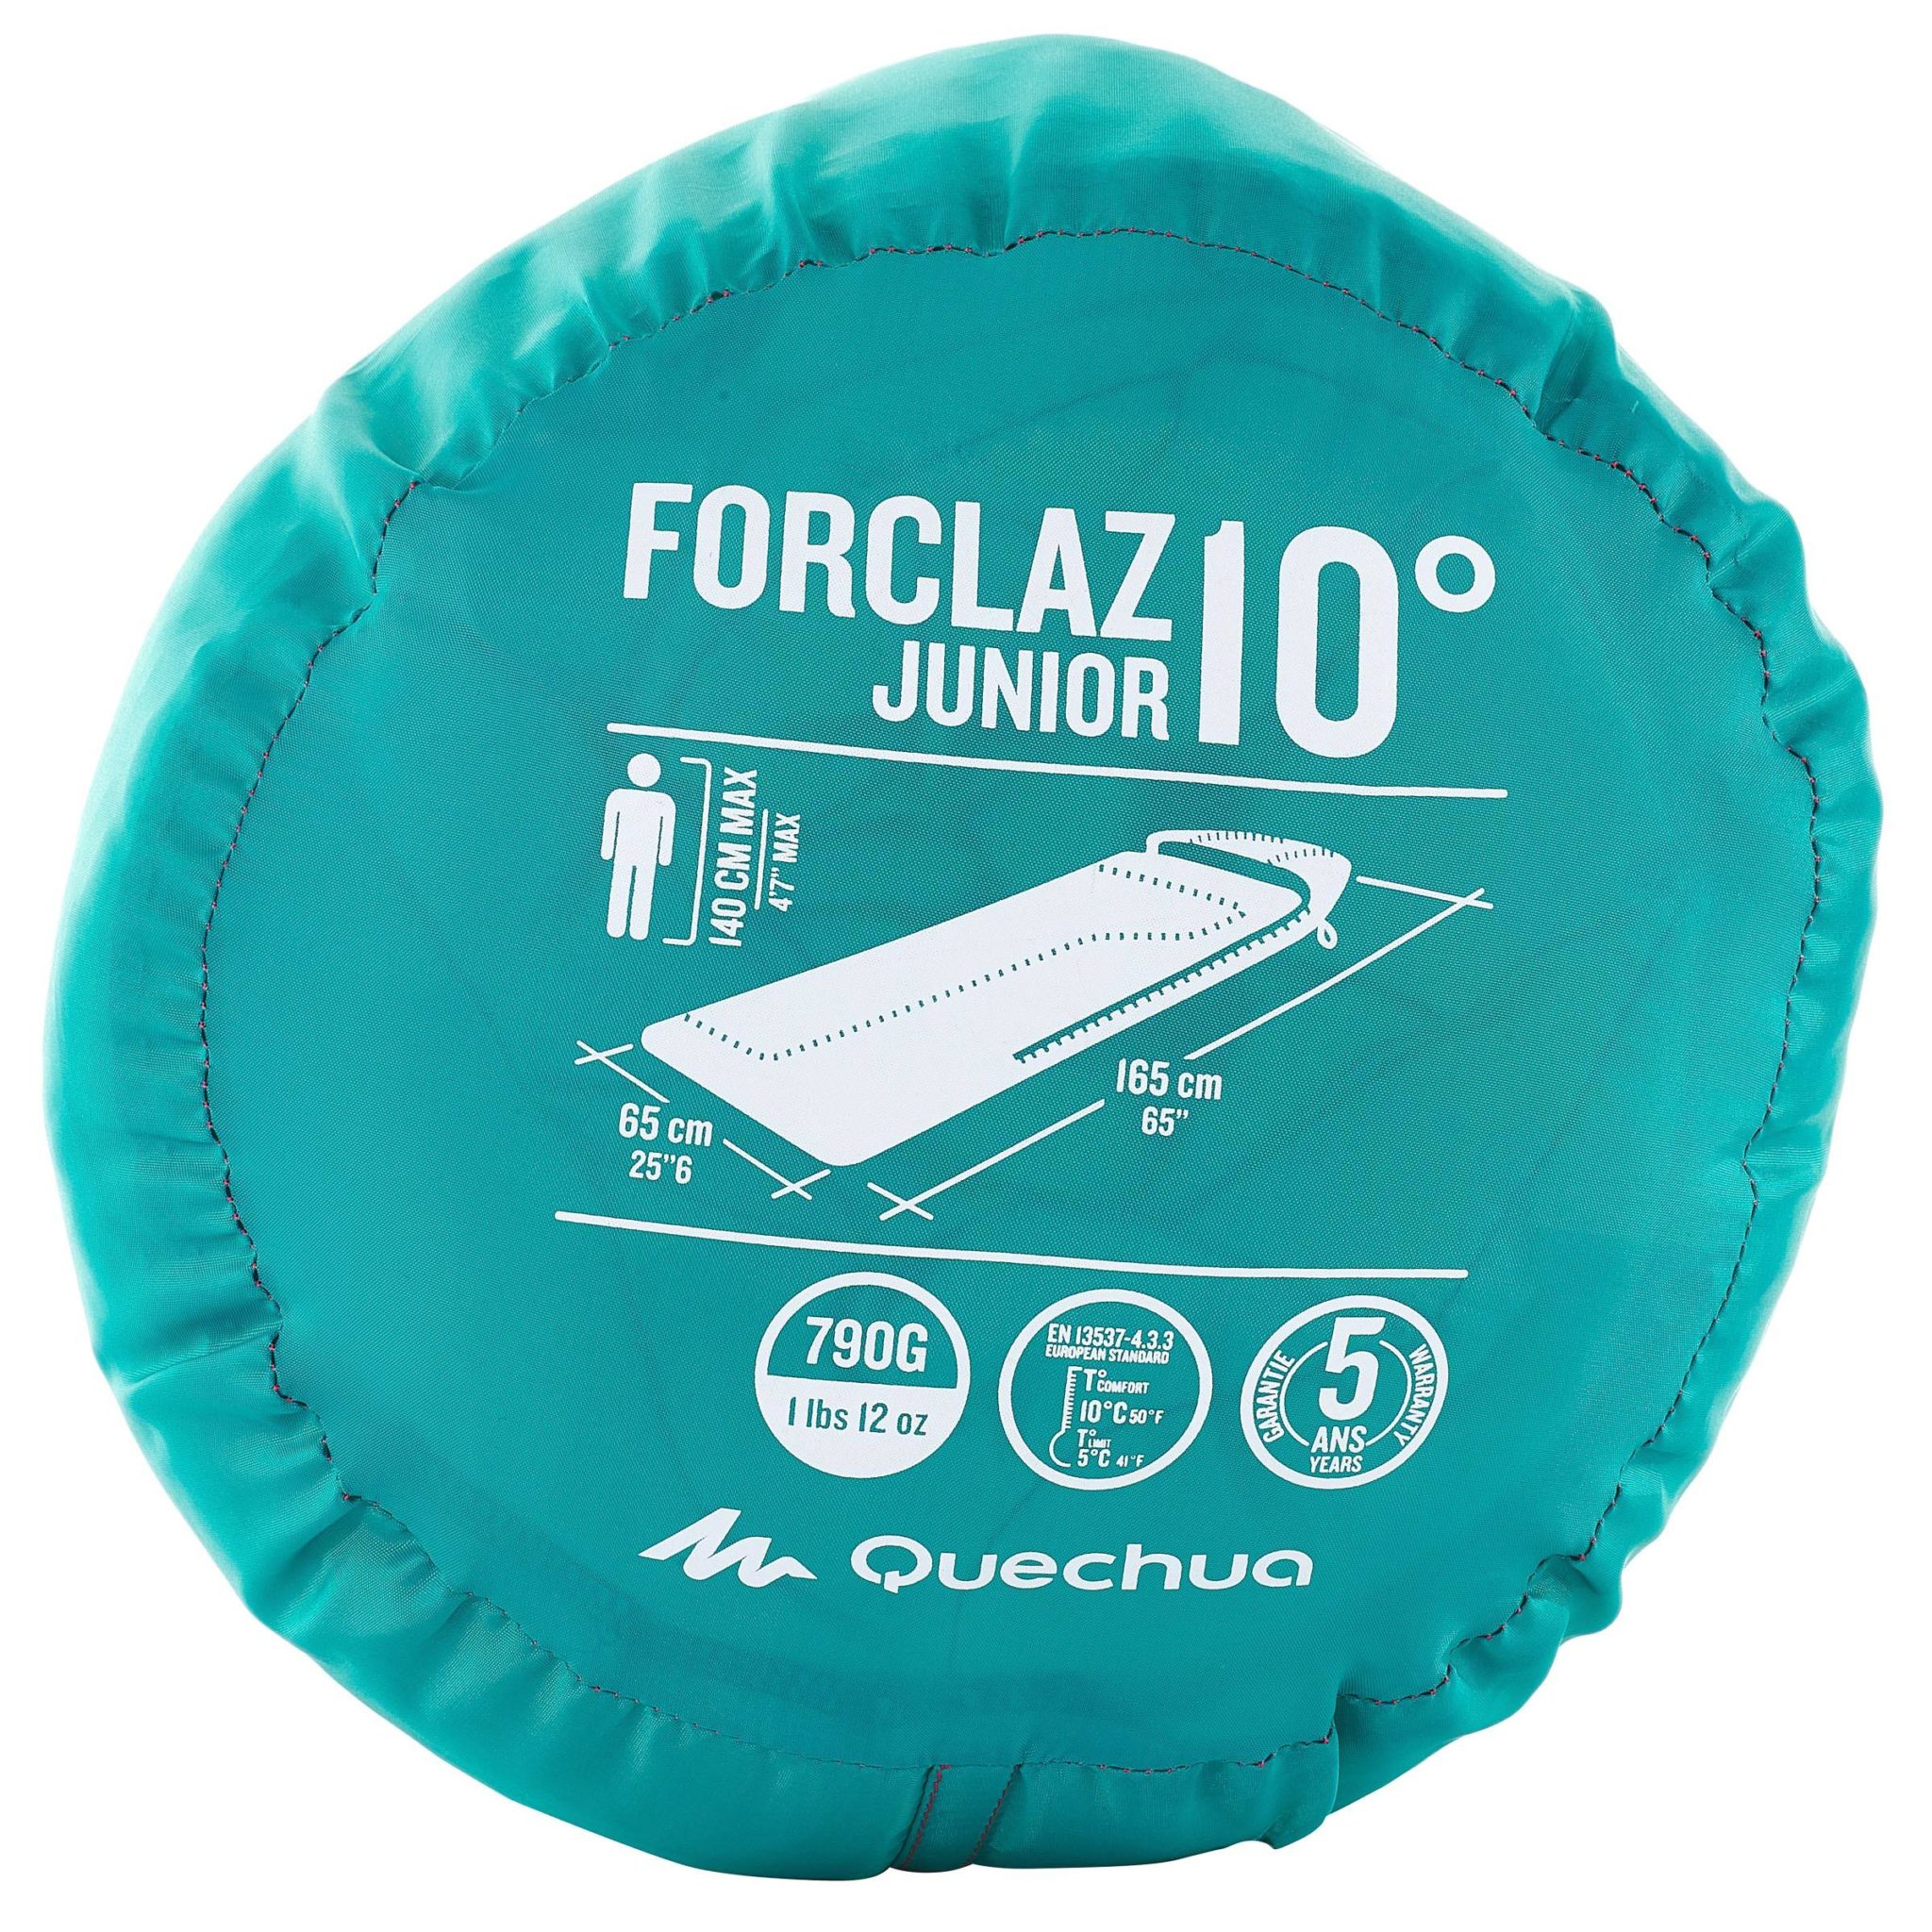 forclaz 10 quechua